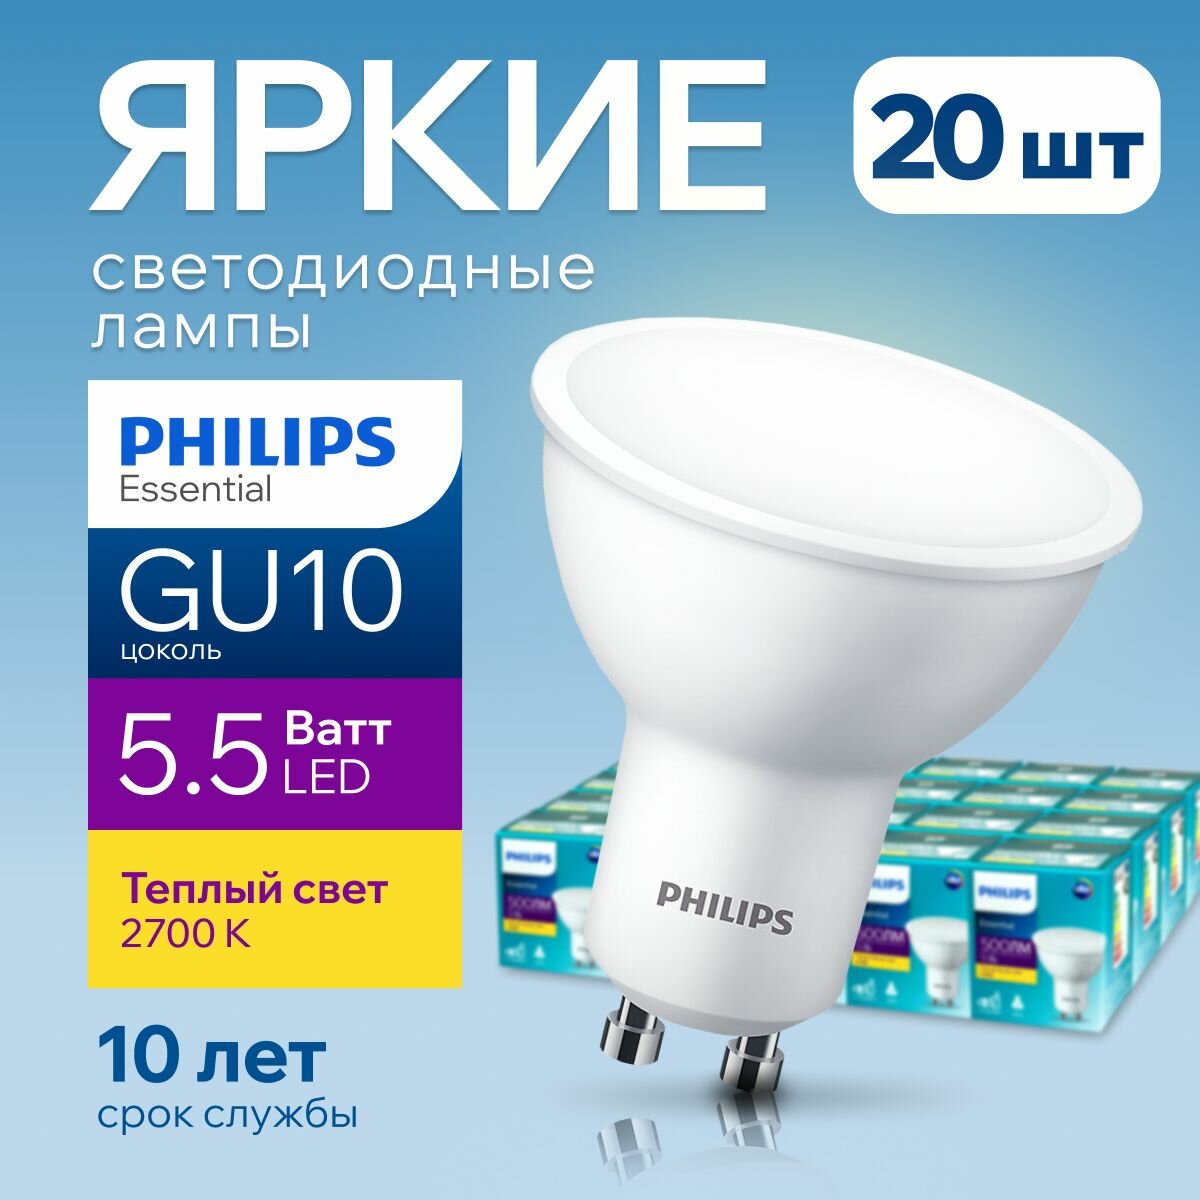 Лампочка светодиодная GU10 Philips 5.5Вт теплый белый свет, PAR16 спот 2700К Essential LED 827, 5.5W, 720лм, набор 20шт